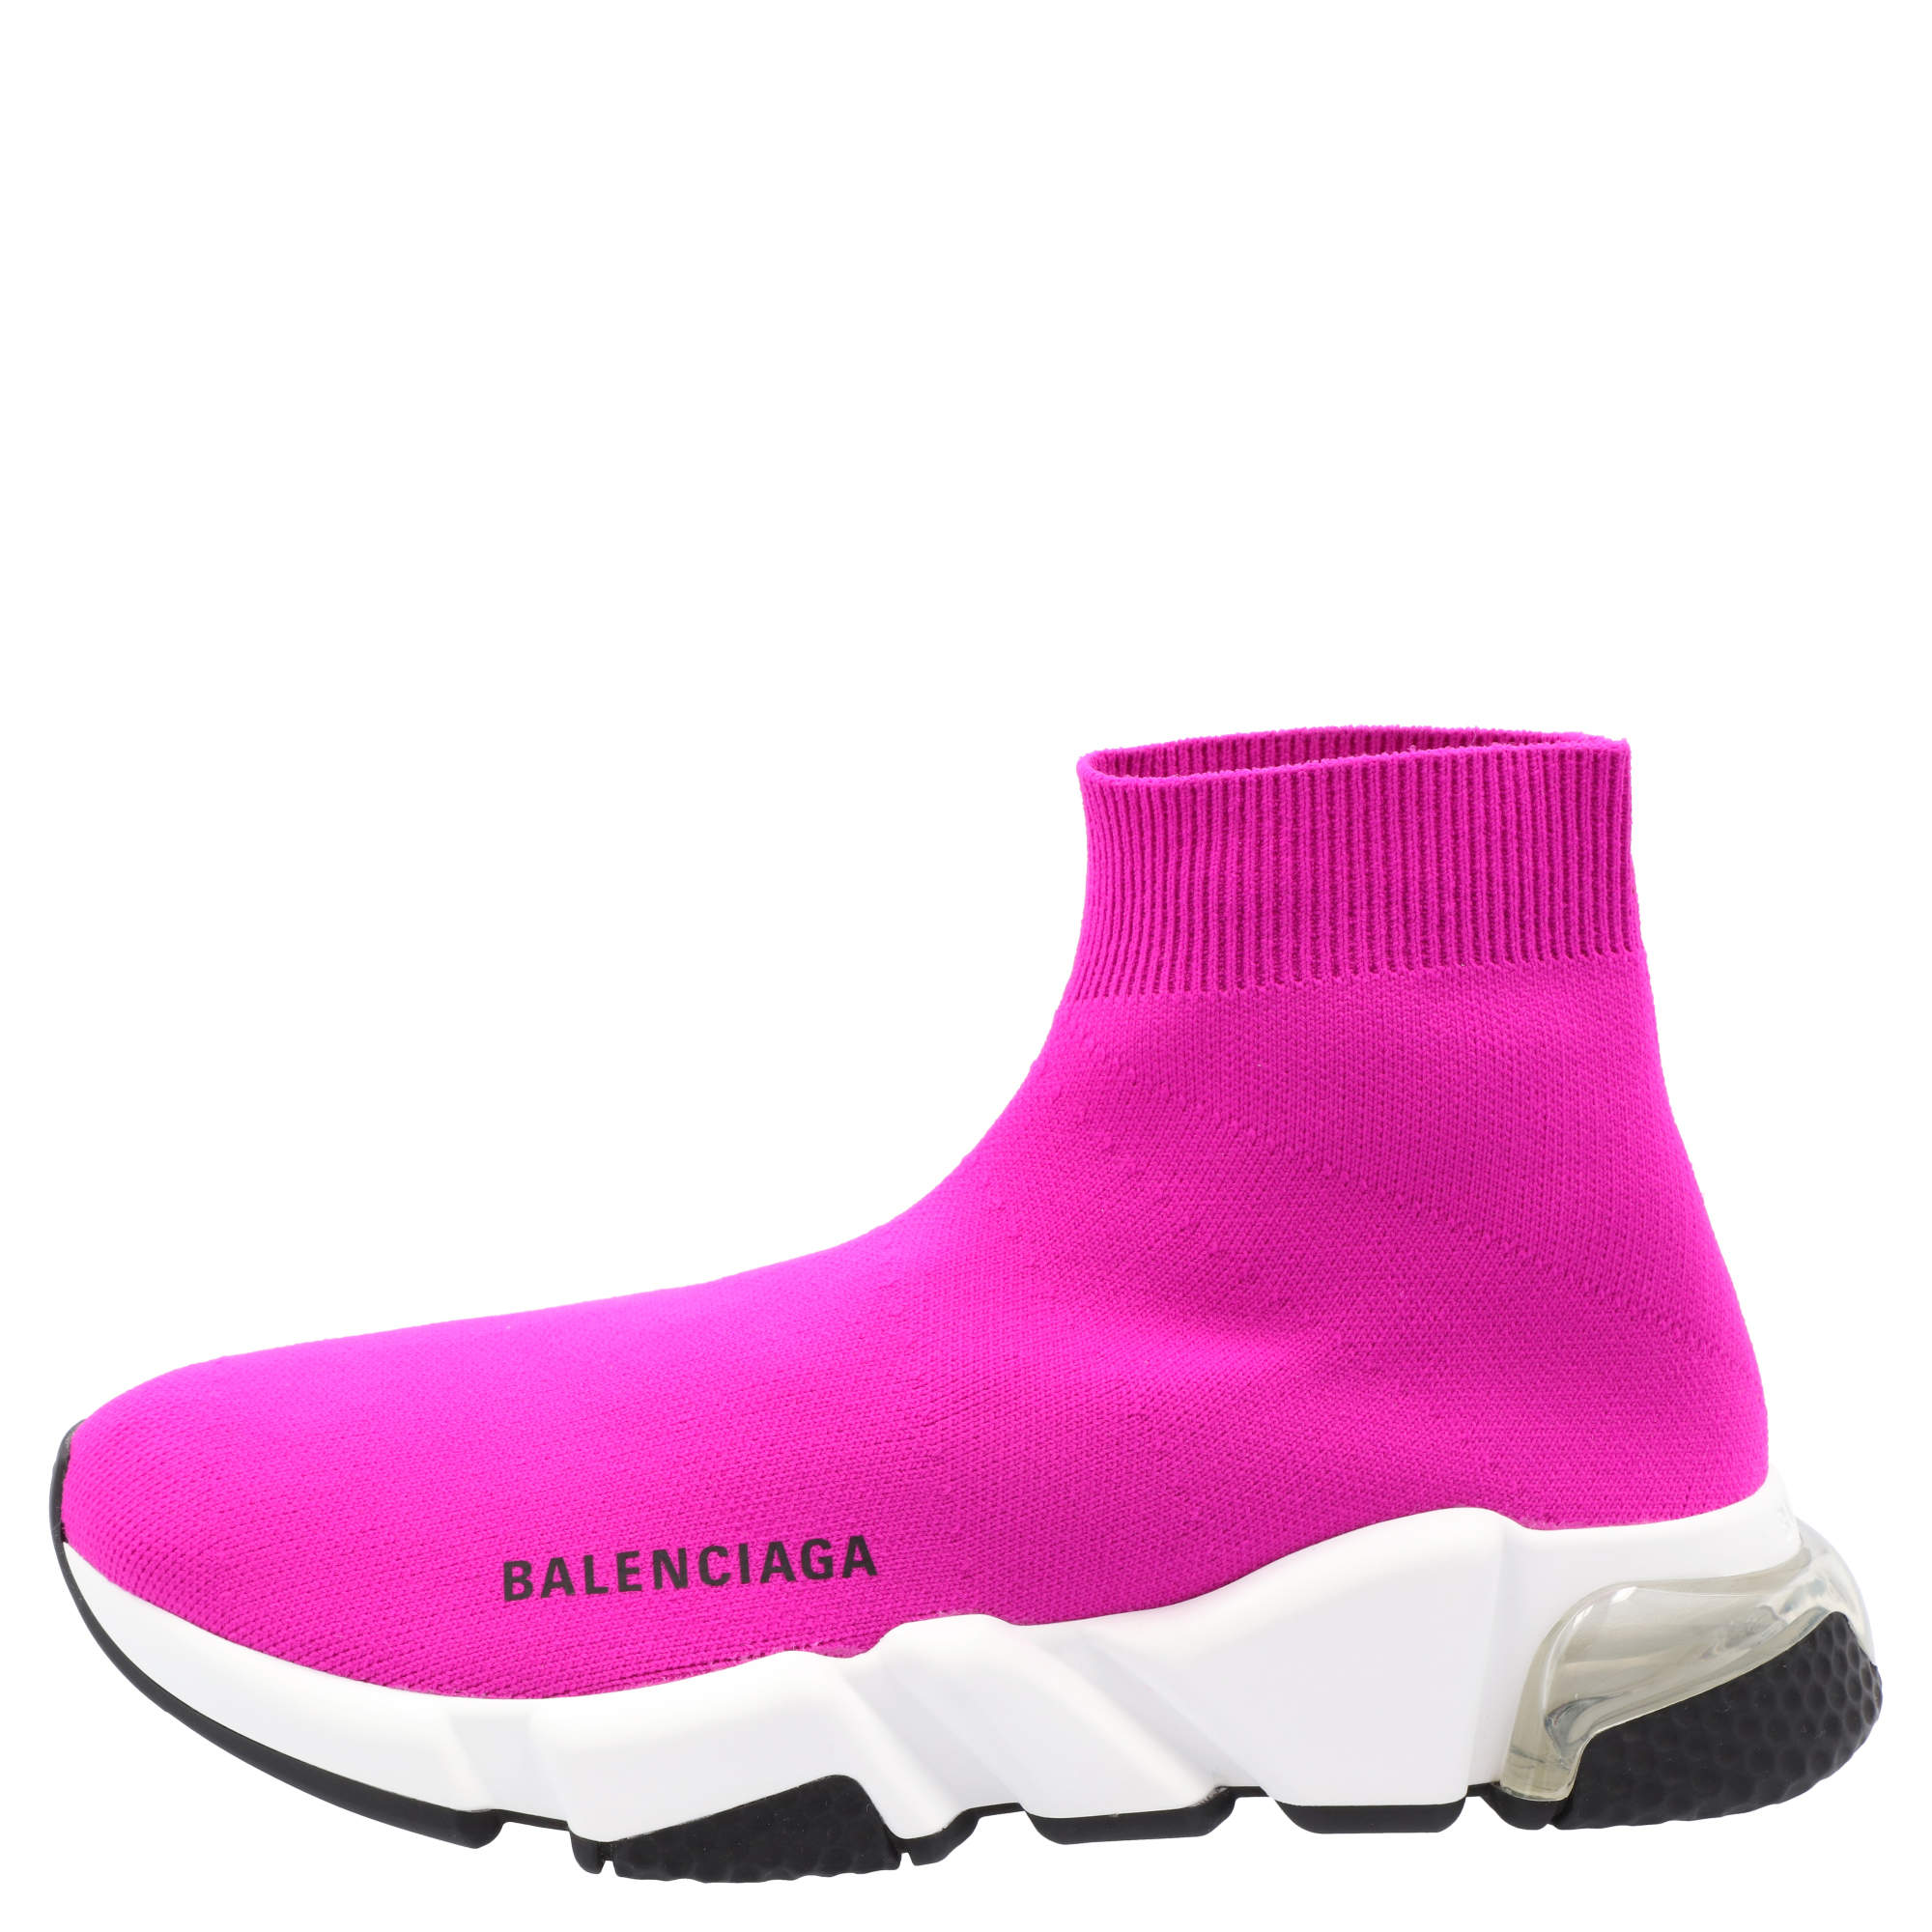 balenciaga shoes women pink